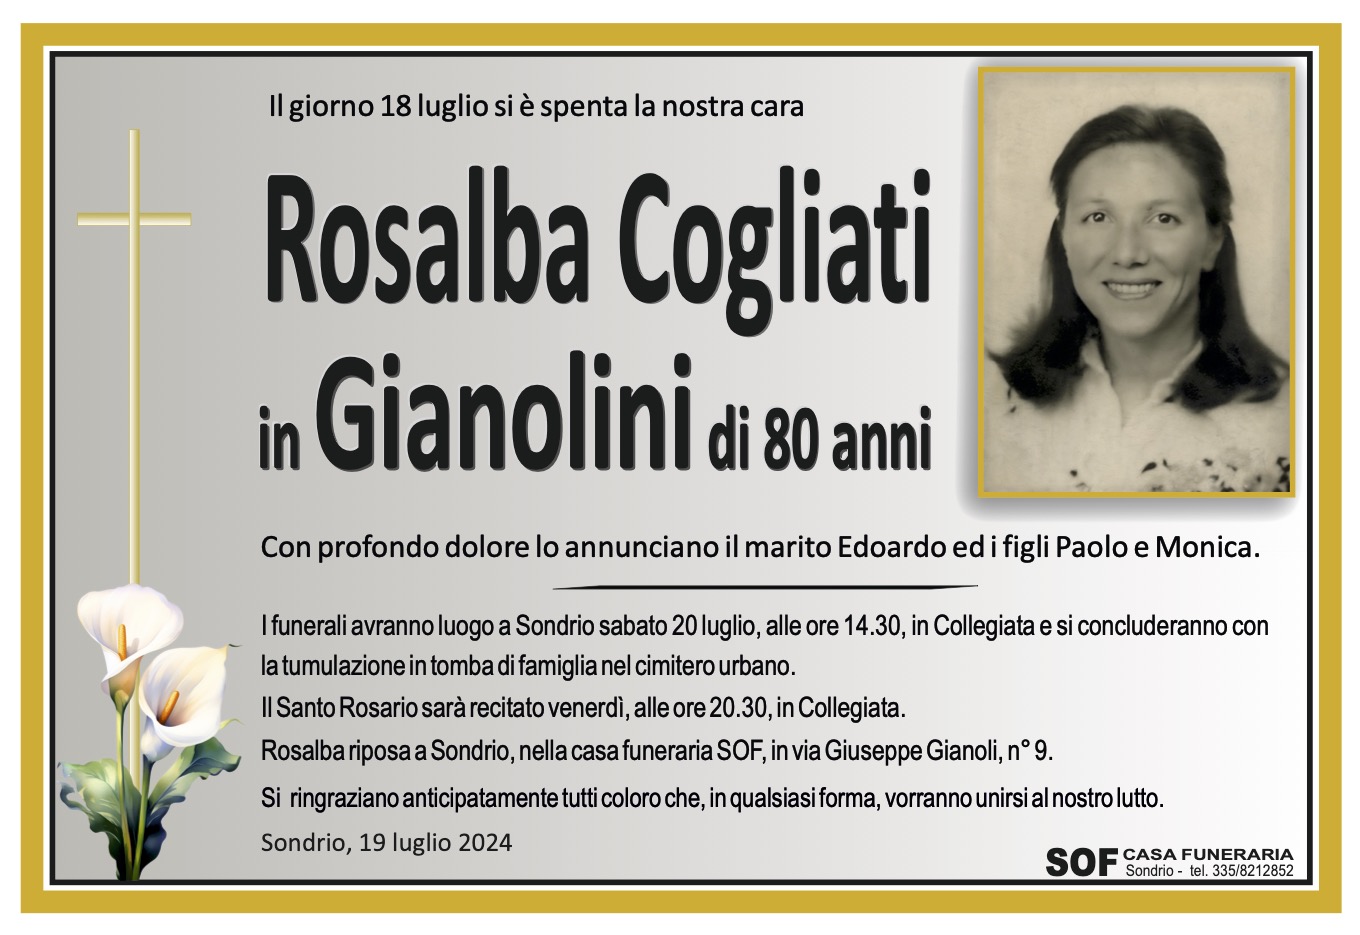 Rosalba Cogliati in Gianolini